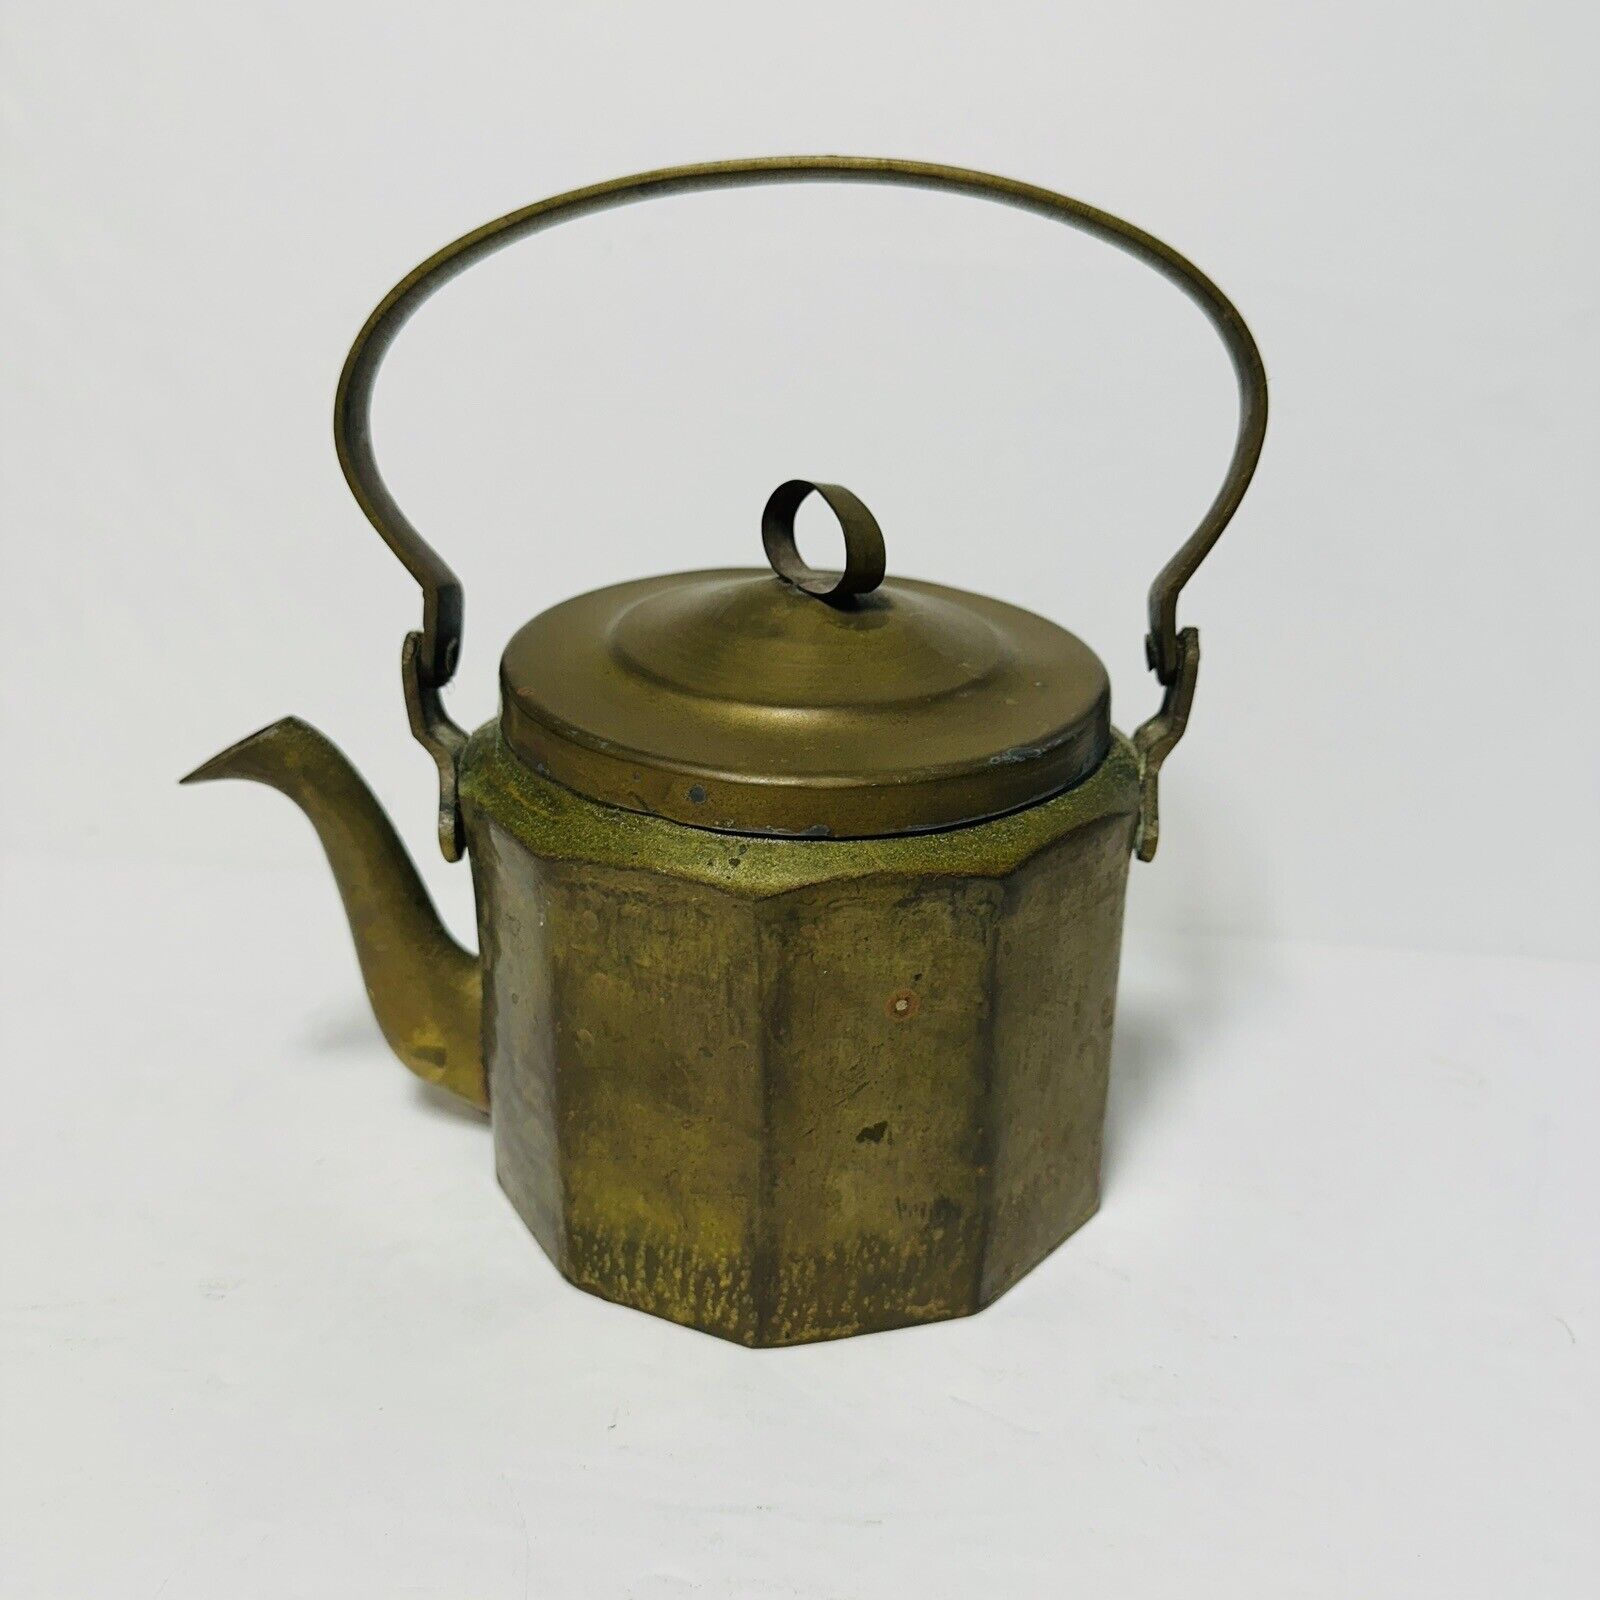 Vintage Tea Kettle Brass Aluminum Decagon 10-sided Gooseneck Spout w/Handle Lid